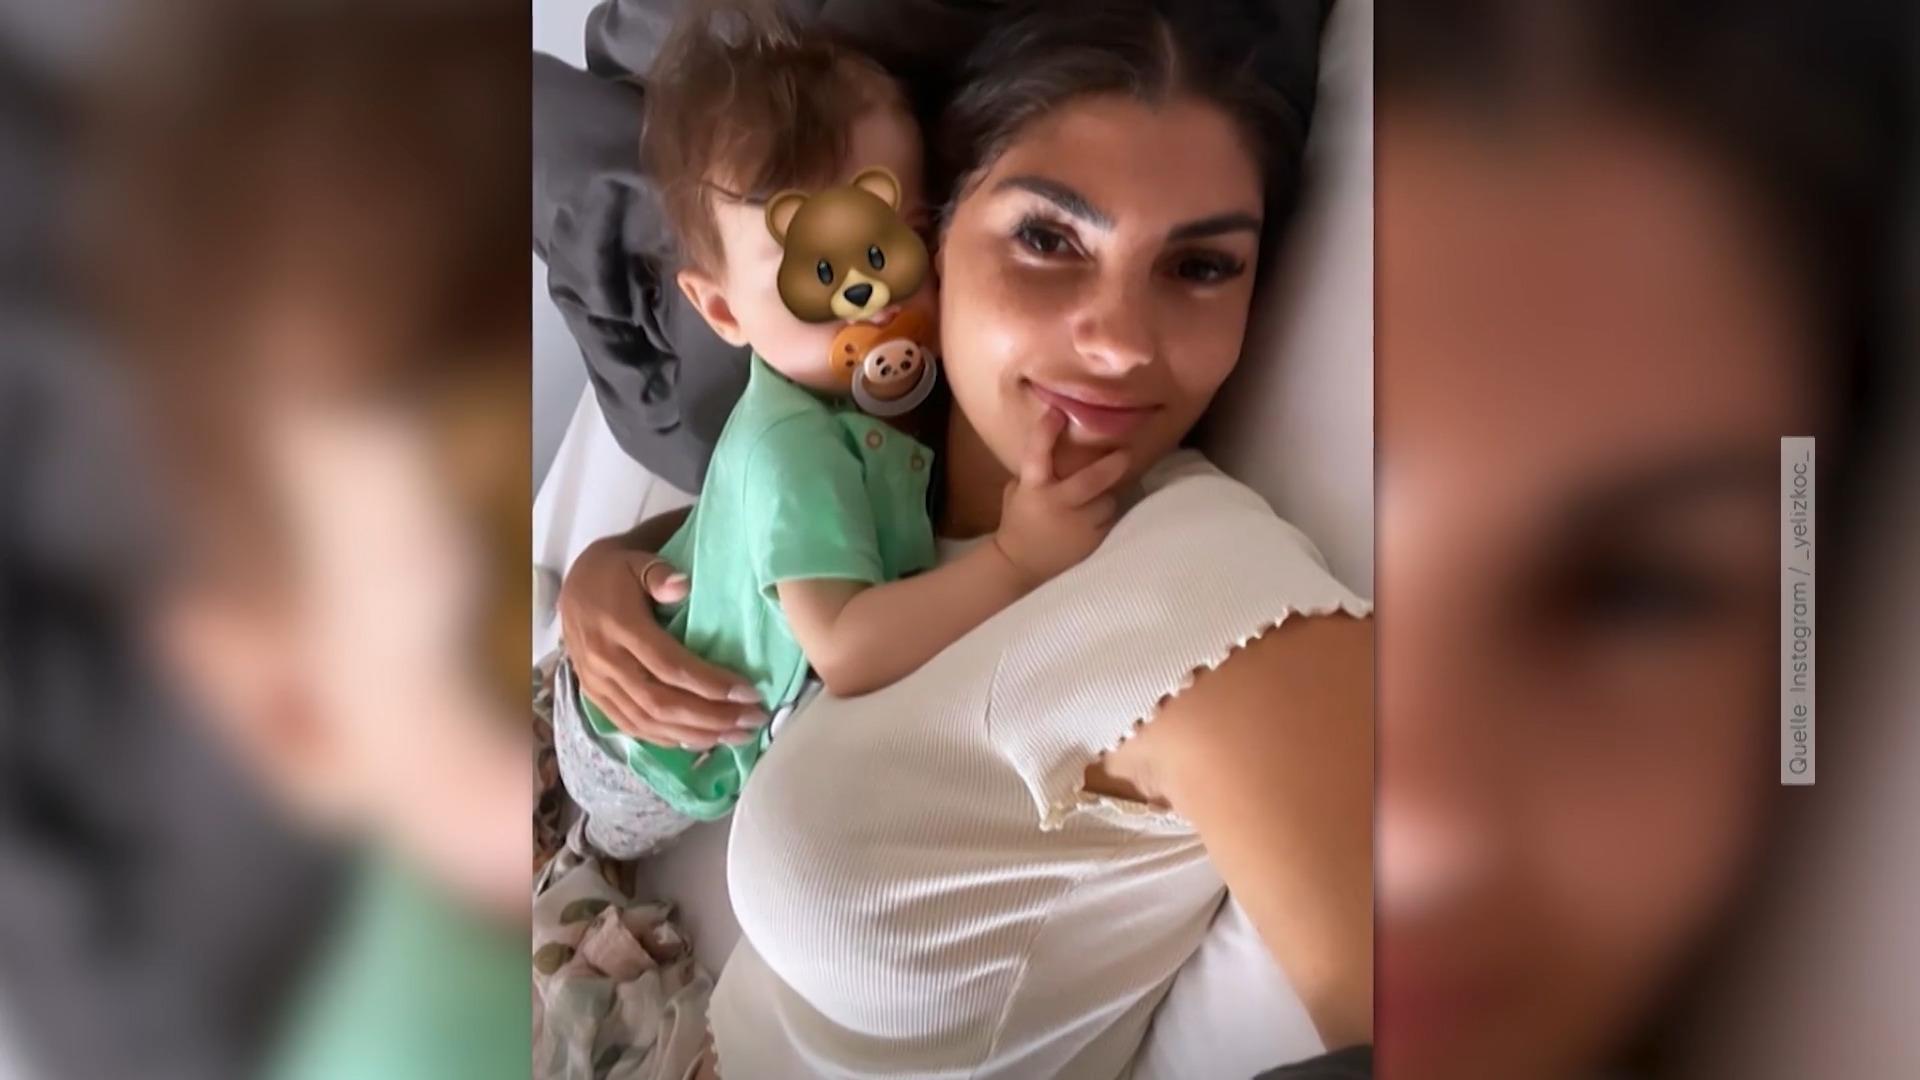 Tochter von Yeliz Koc macht ihr erstes Selfie Influencer-Baby